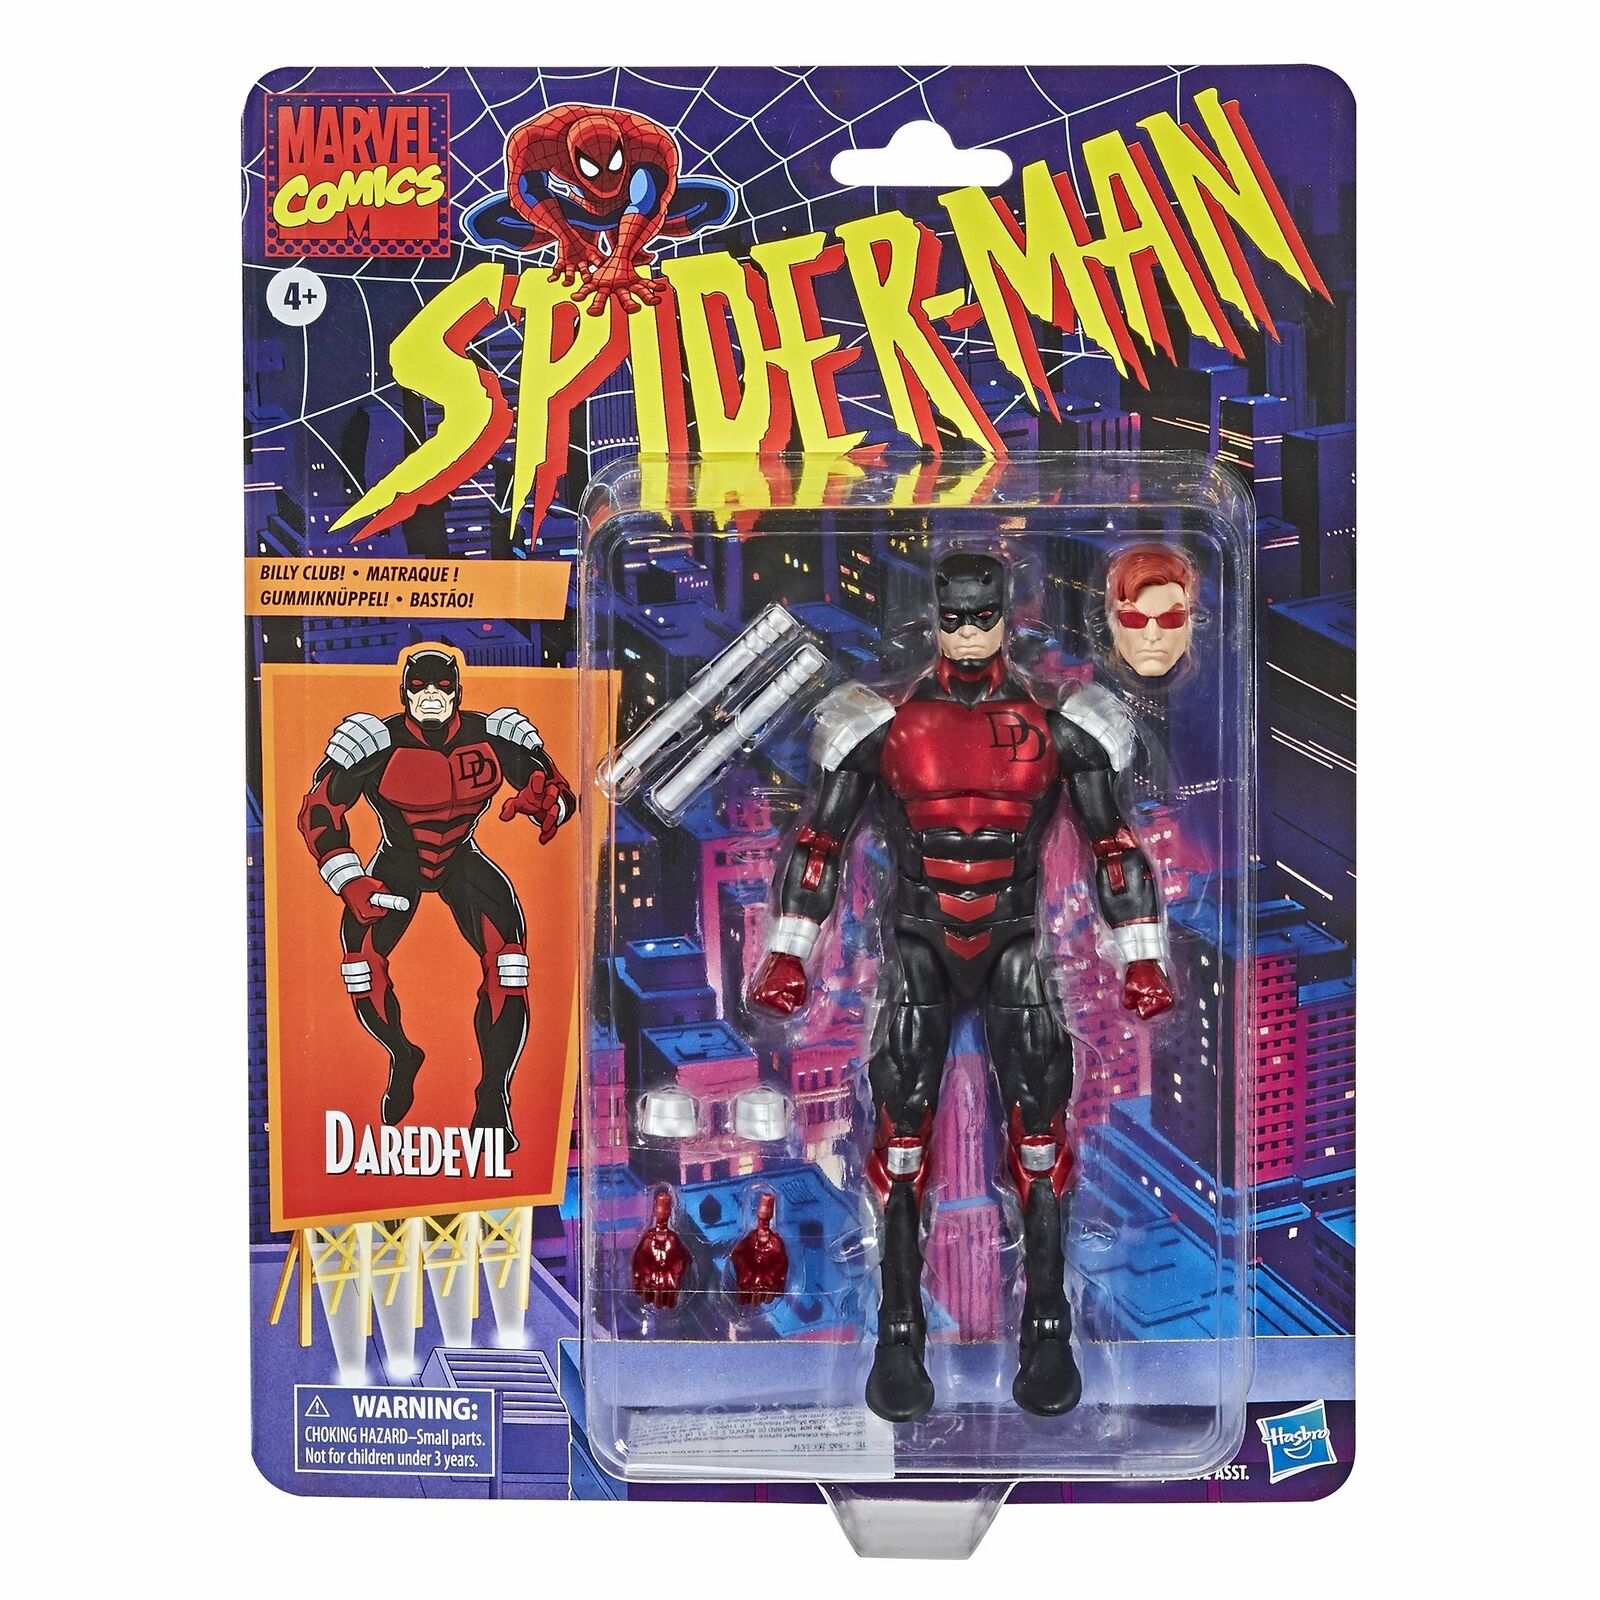 Marvel Comics Spider-Man Vintage Figure